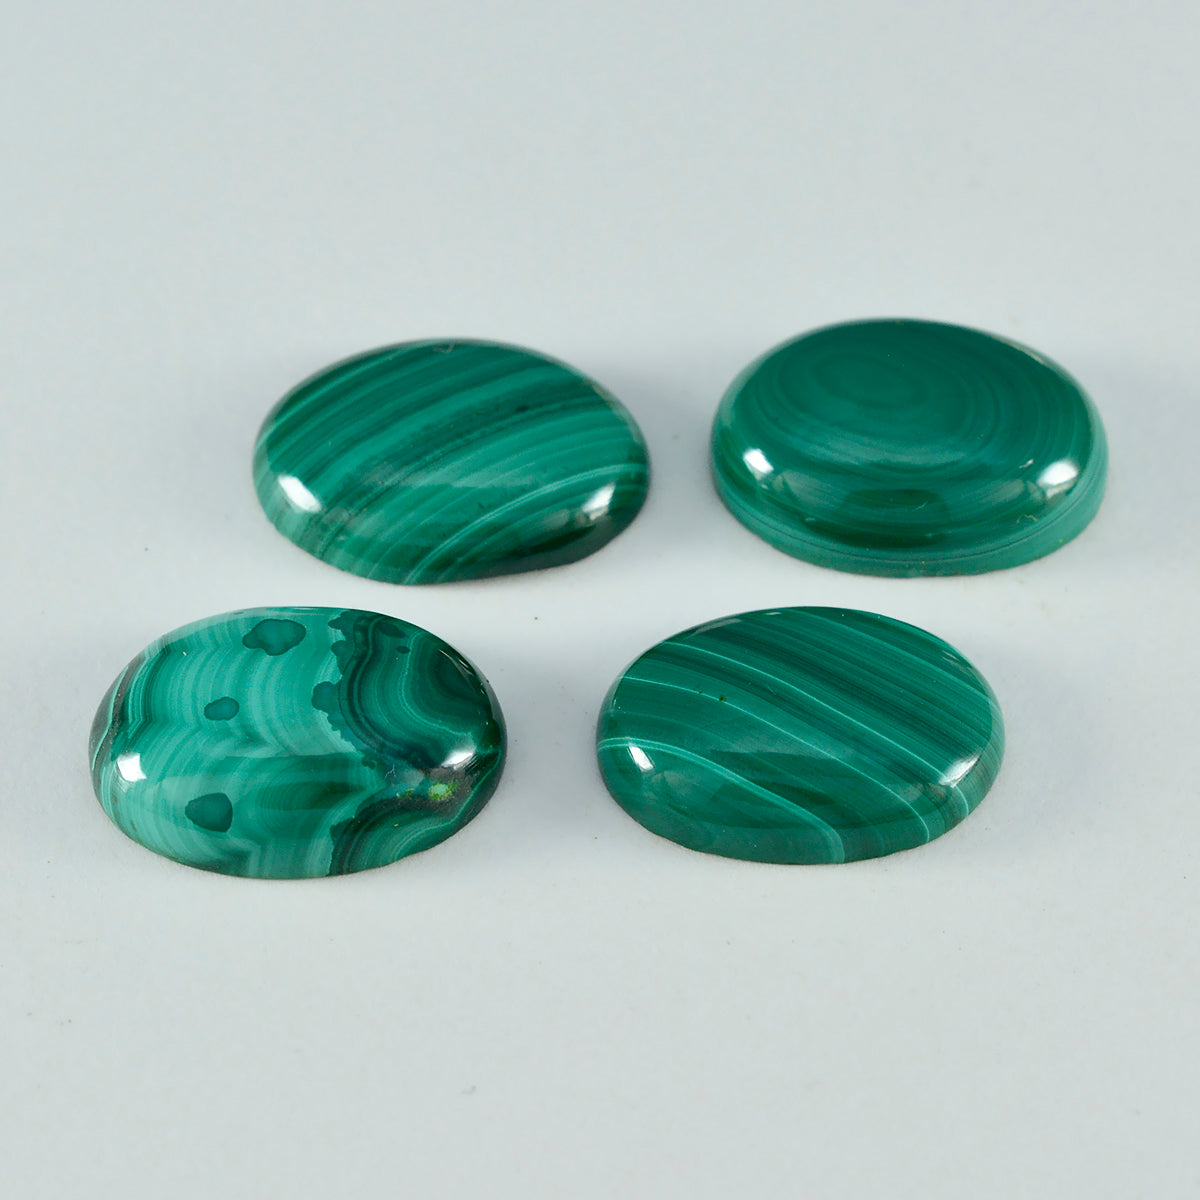 riyogems 1шт зеленый малахит кабошон 10х12 мм овальной формы качественный россыпной камень